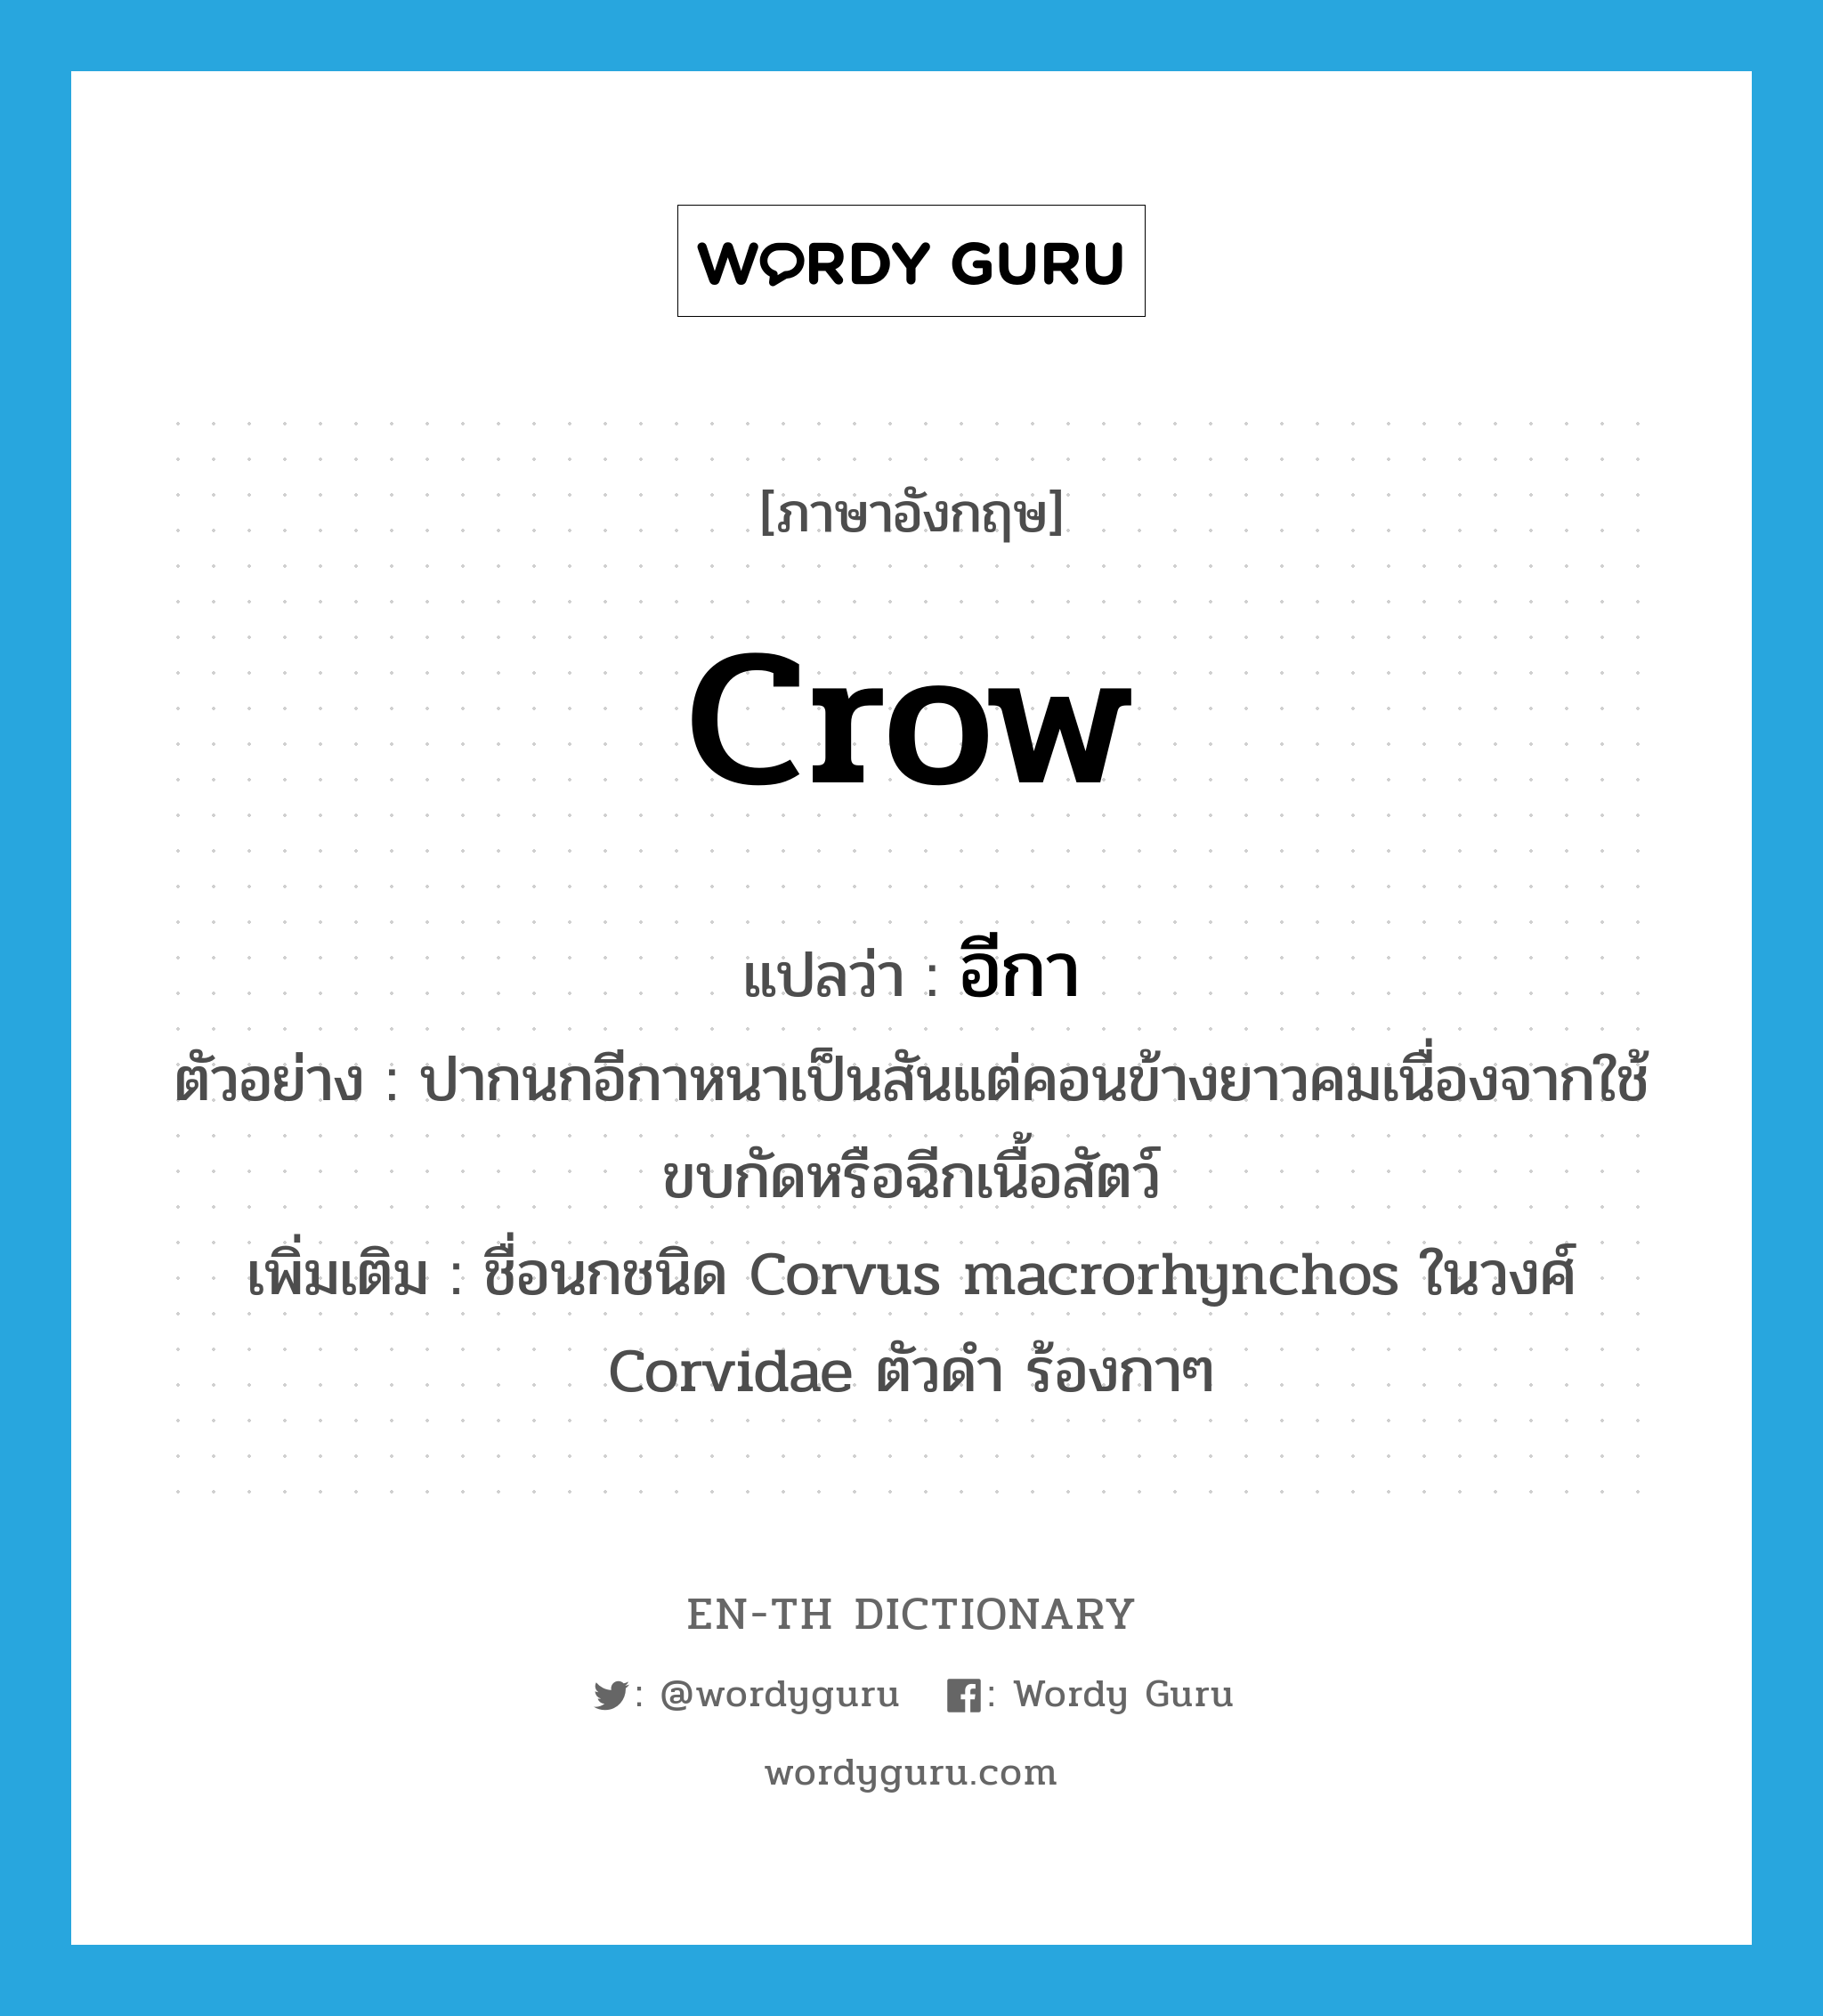 อีกา ภาษาอังกฤษ?, คำศัพท์ภาษาอังกฤษ อีกา แปลว่า crow ประเภท N ตัวอย่าง ปากนกอีกาหนาเป็นสันแต่คอนข้างยาวคมเนื่องจากใช้ขบกัดหรือฉีกเนื้อสัตว์ เพิ่มเติม ชื่อนกชนิด Corvus macrorhynchos ในวงศ์ Corvidae ตัวดำ ร้องกาๆ หมวด N